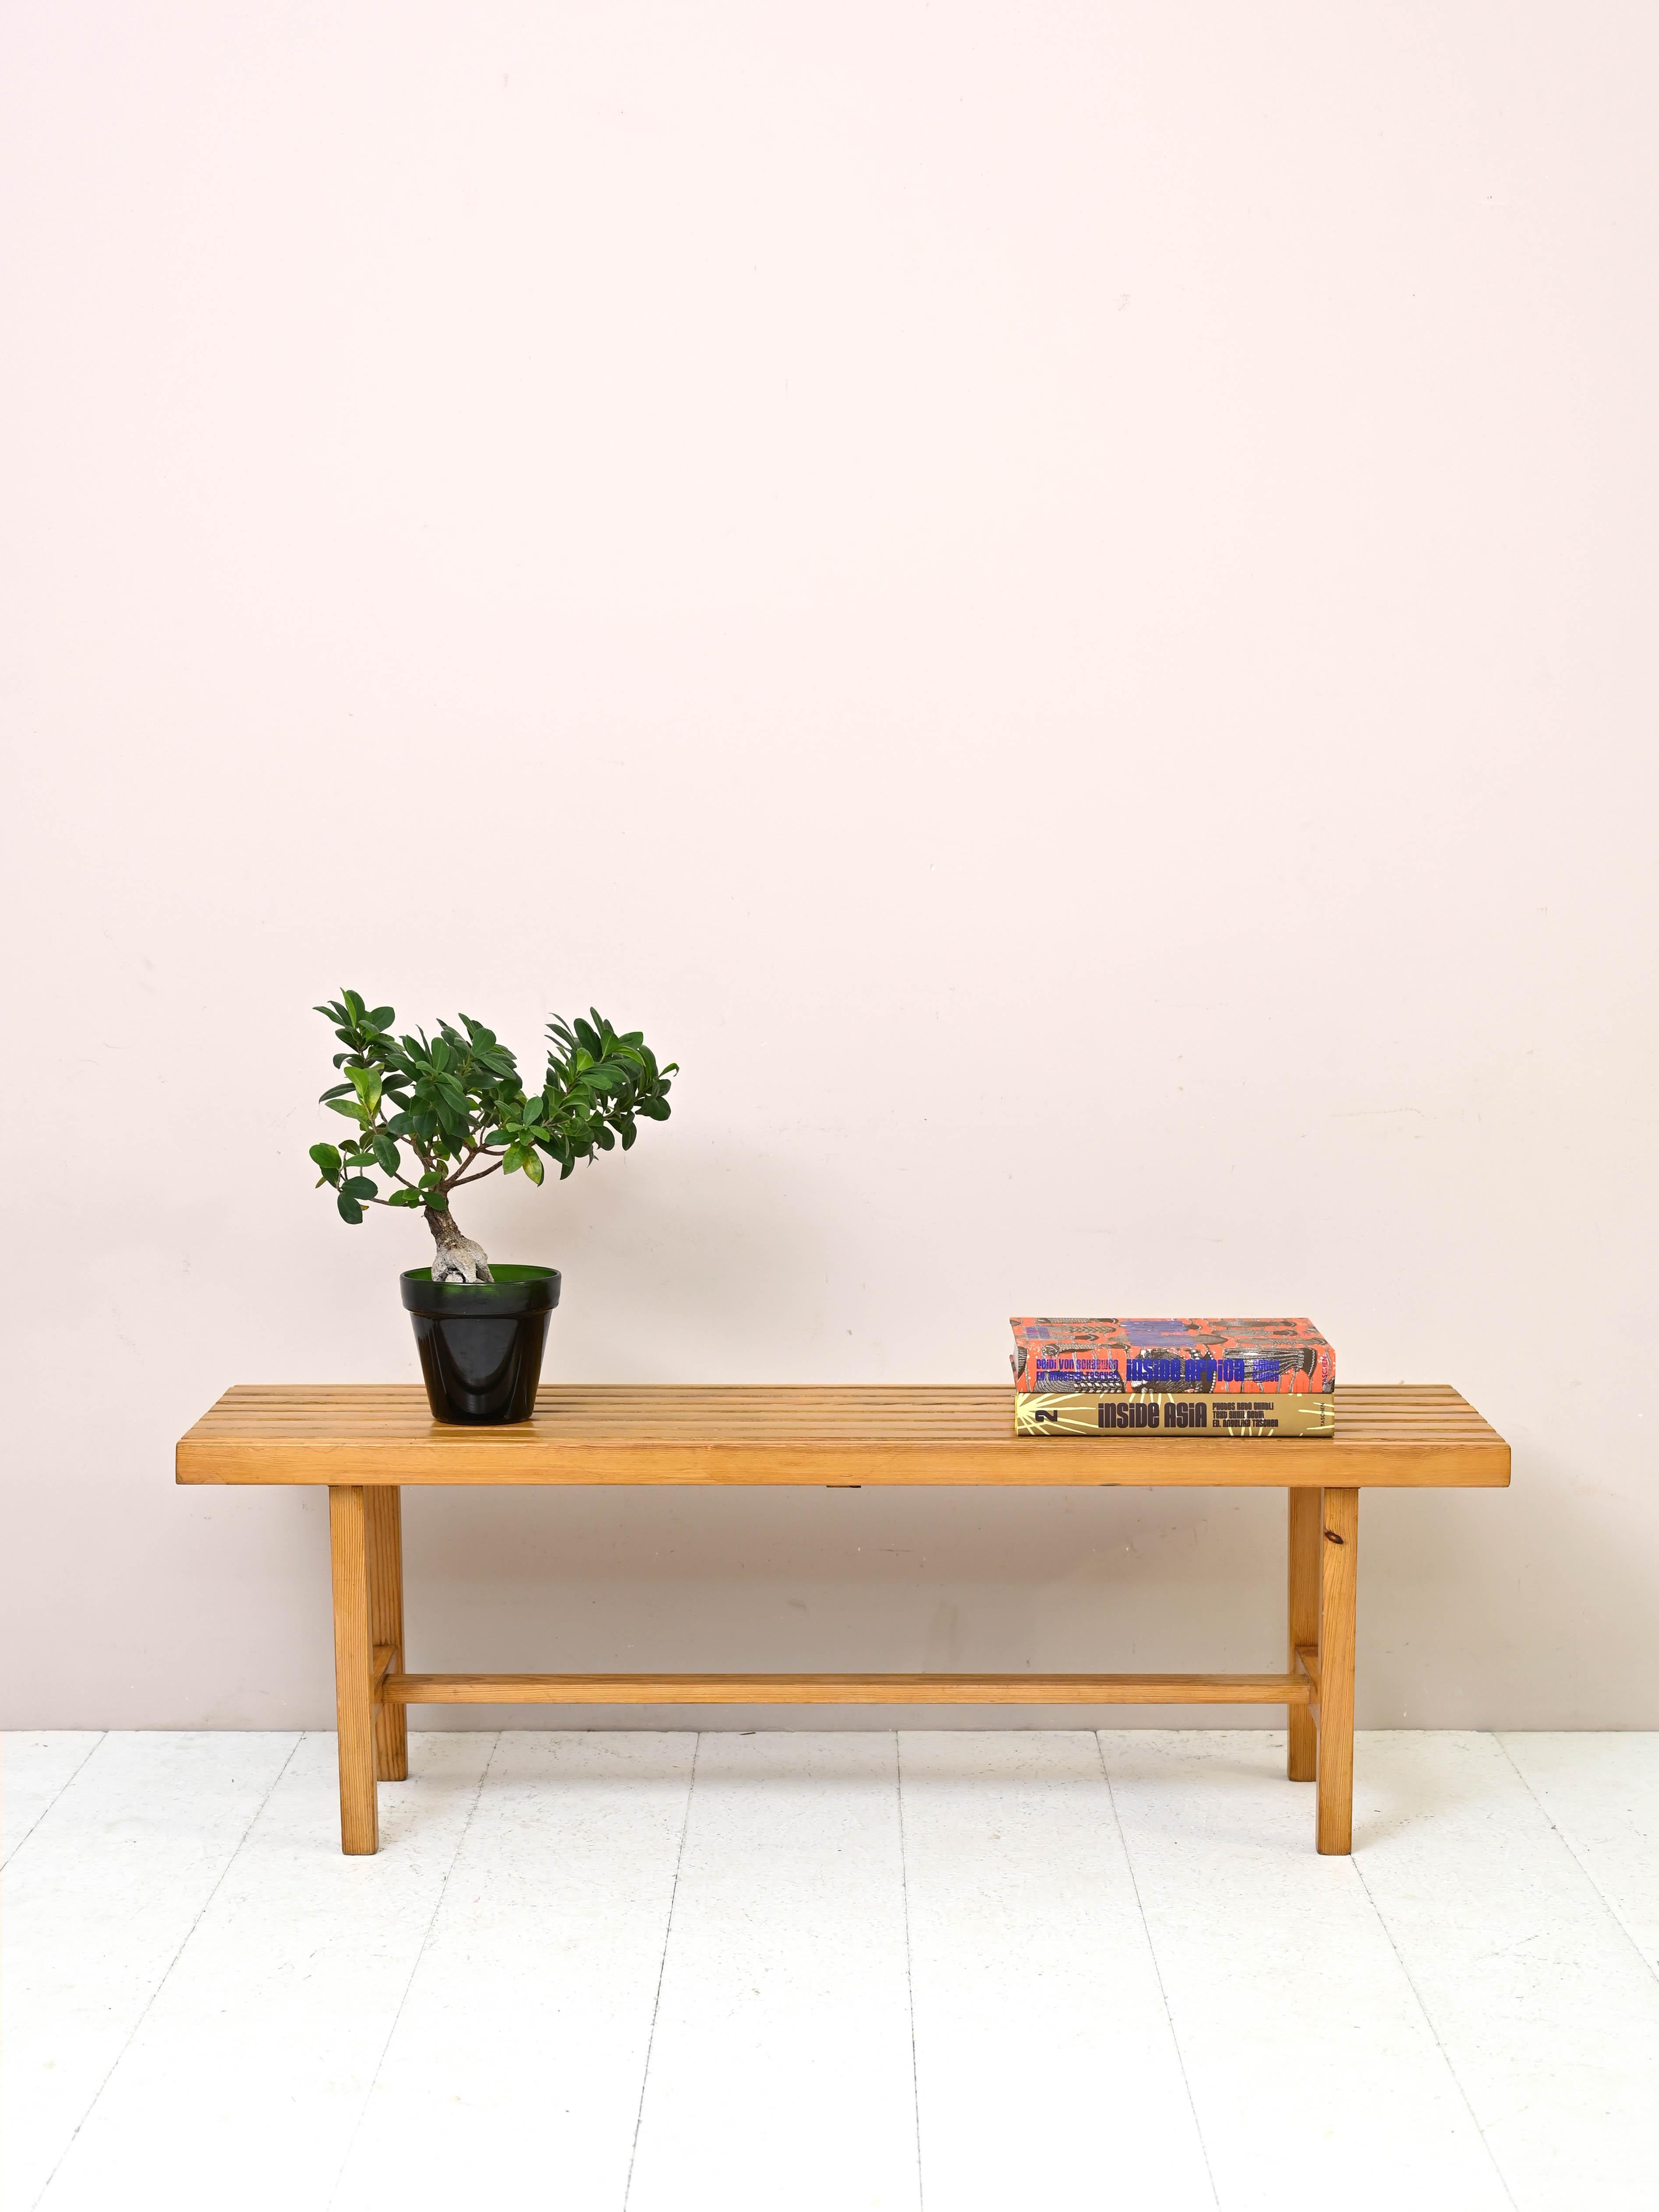 Vieux banc en bois de pin.

Un meuble simple, de forme carrée, qui peut être utilisé pour de multiples fonctions et dans différentes pièces de la maison, comme un sommier, à l'entrée, dans le salon et même comme support de télévision.
Sa forme